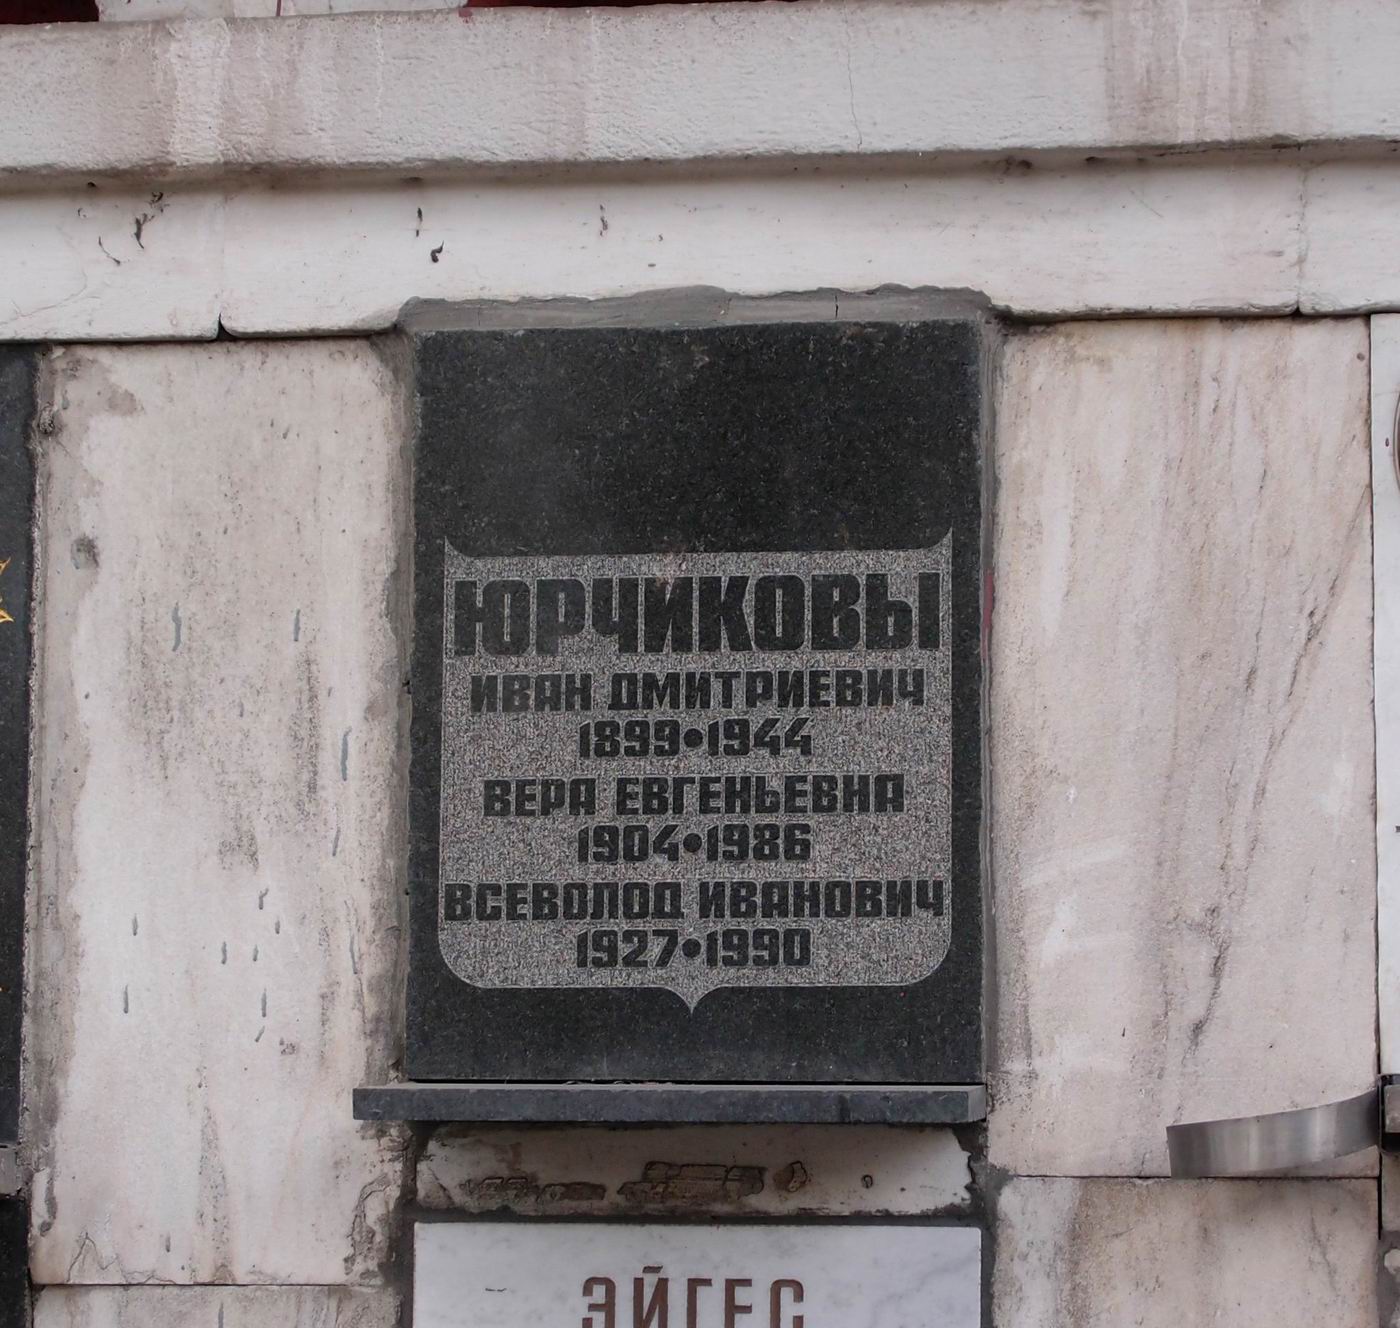 Плита на нише Юрчикова И.Д. (1899–1944), на Новодевичьем кладбище (колумбарий [94]–2–1).